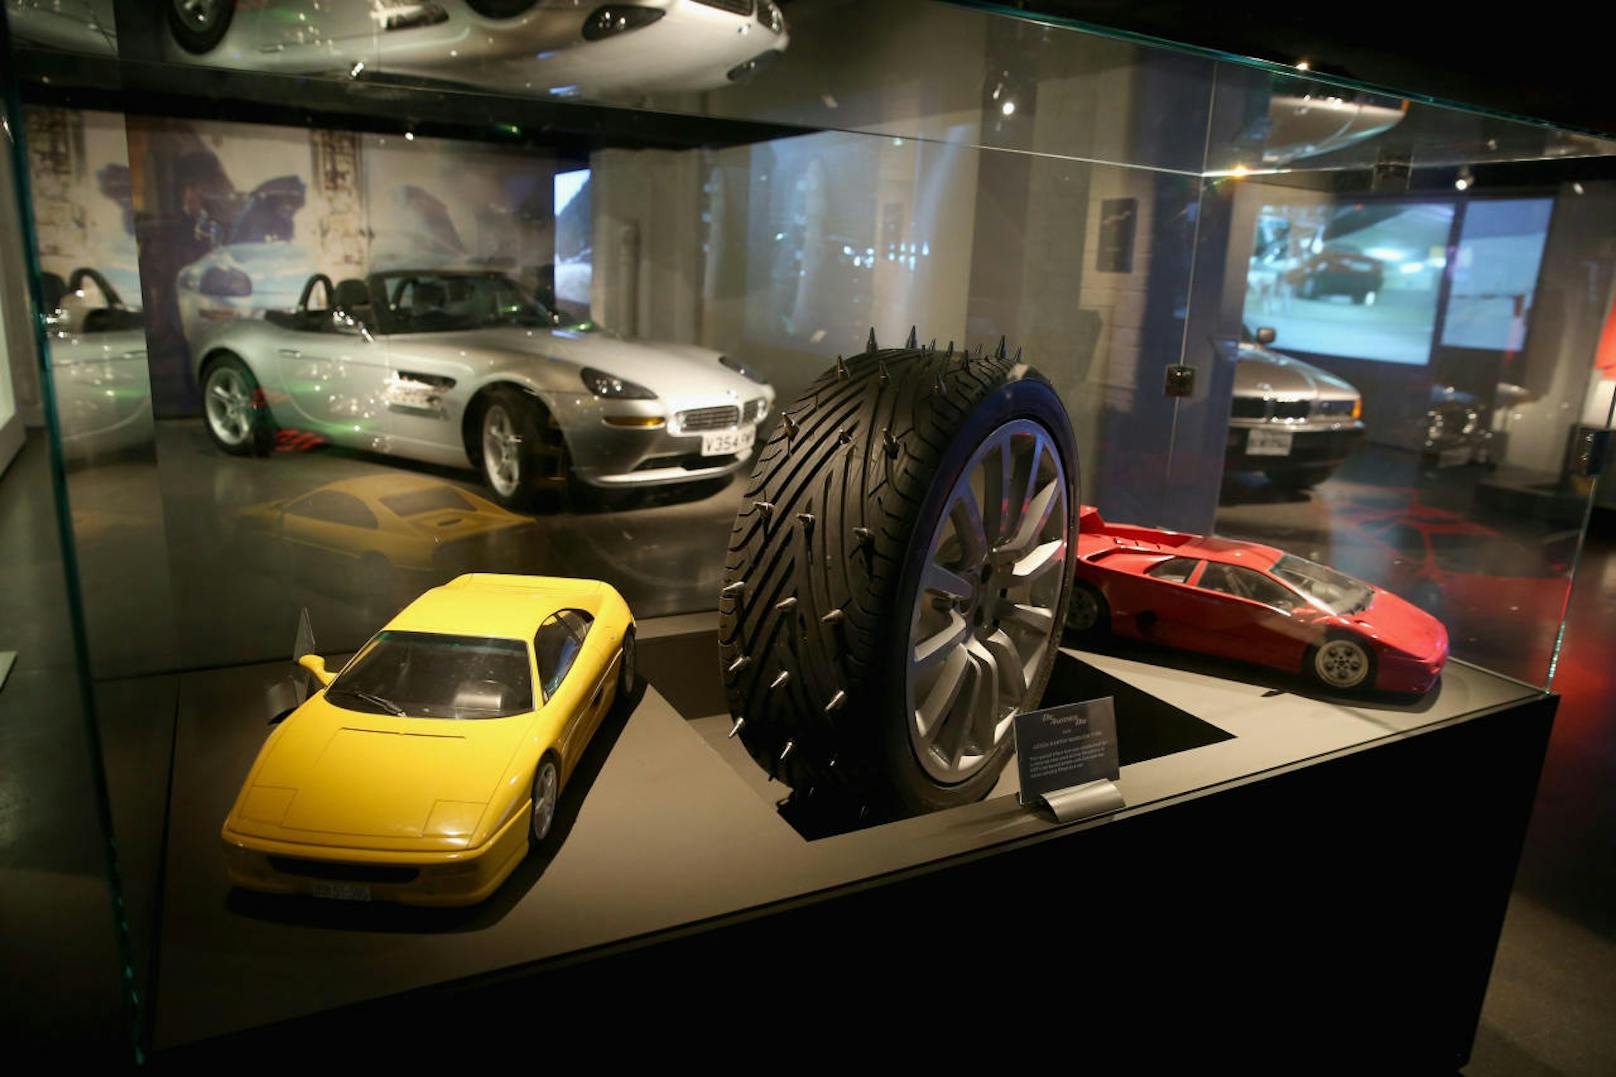 Modelle und Gadgets - im Hintergrund der BMW Z8 aus "Die Welt ist nicht genug" (1999).